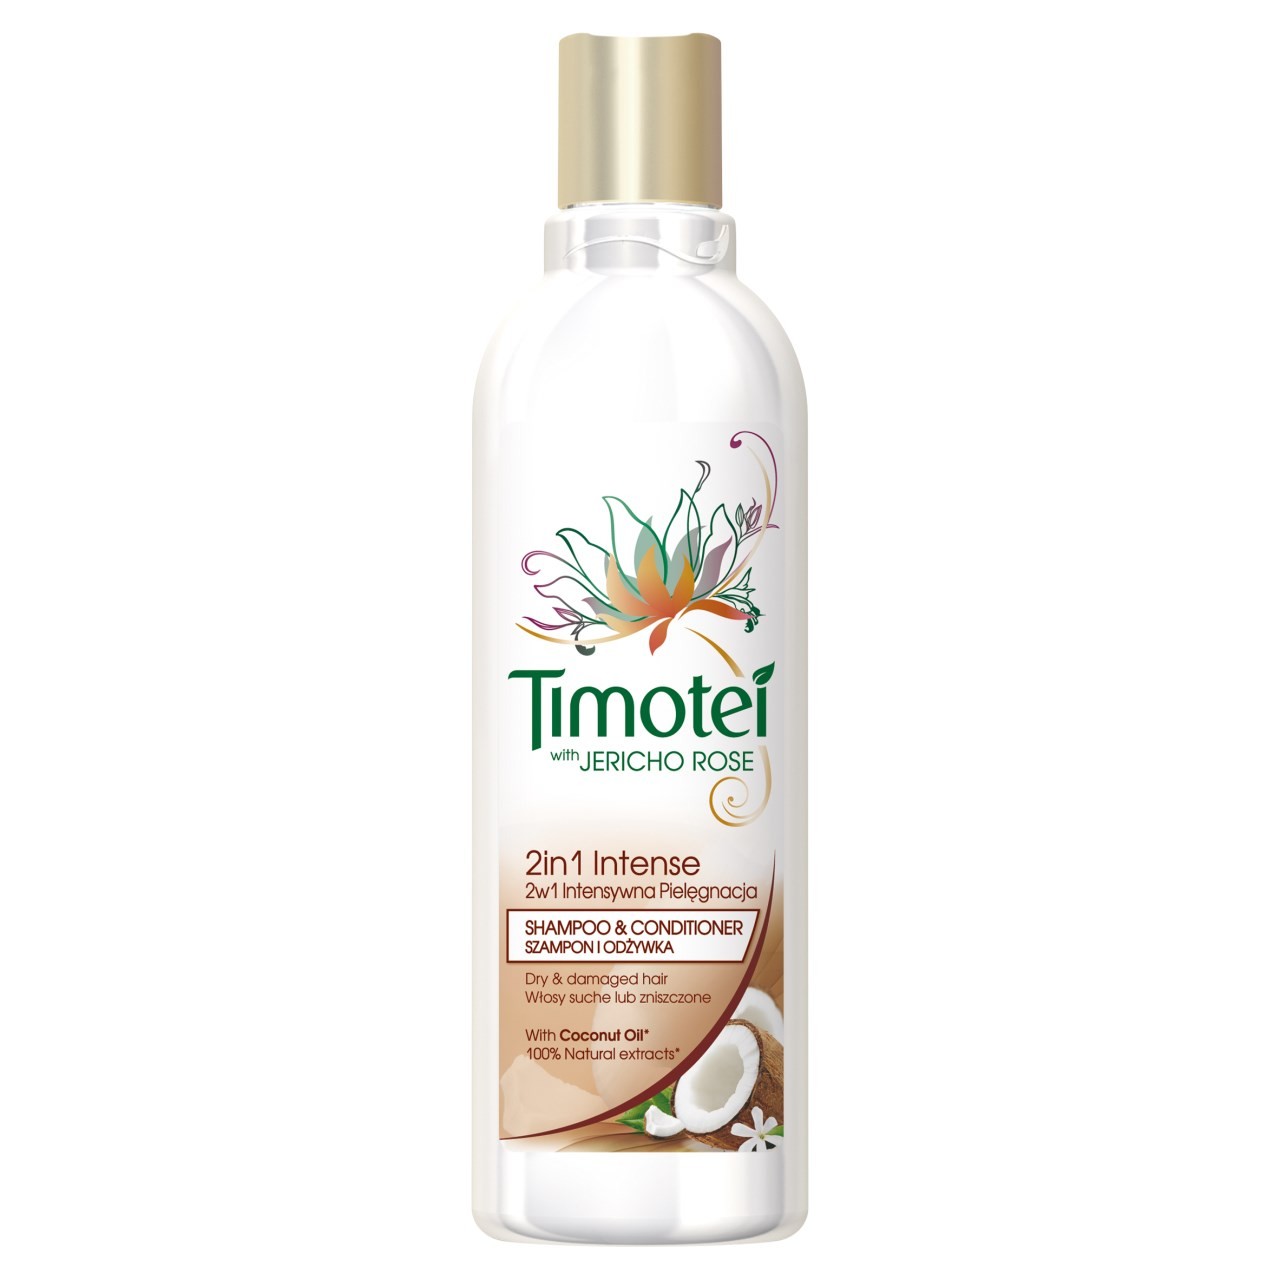 szampon timotei intensywna odbudowa wizaz